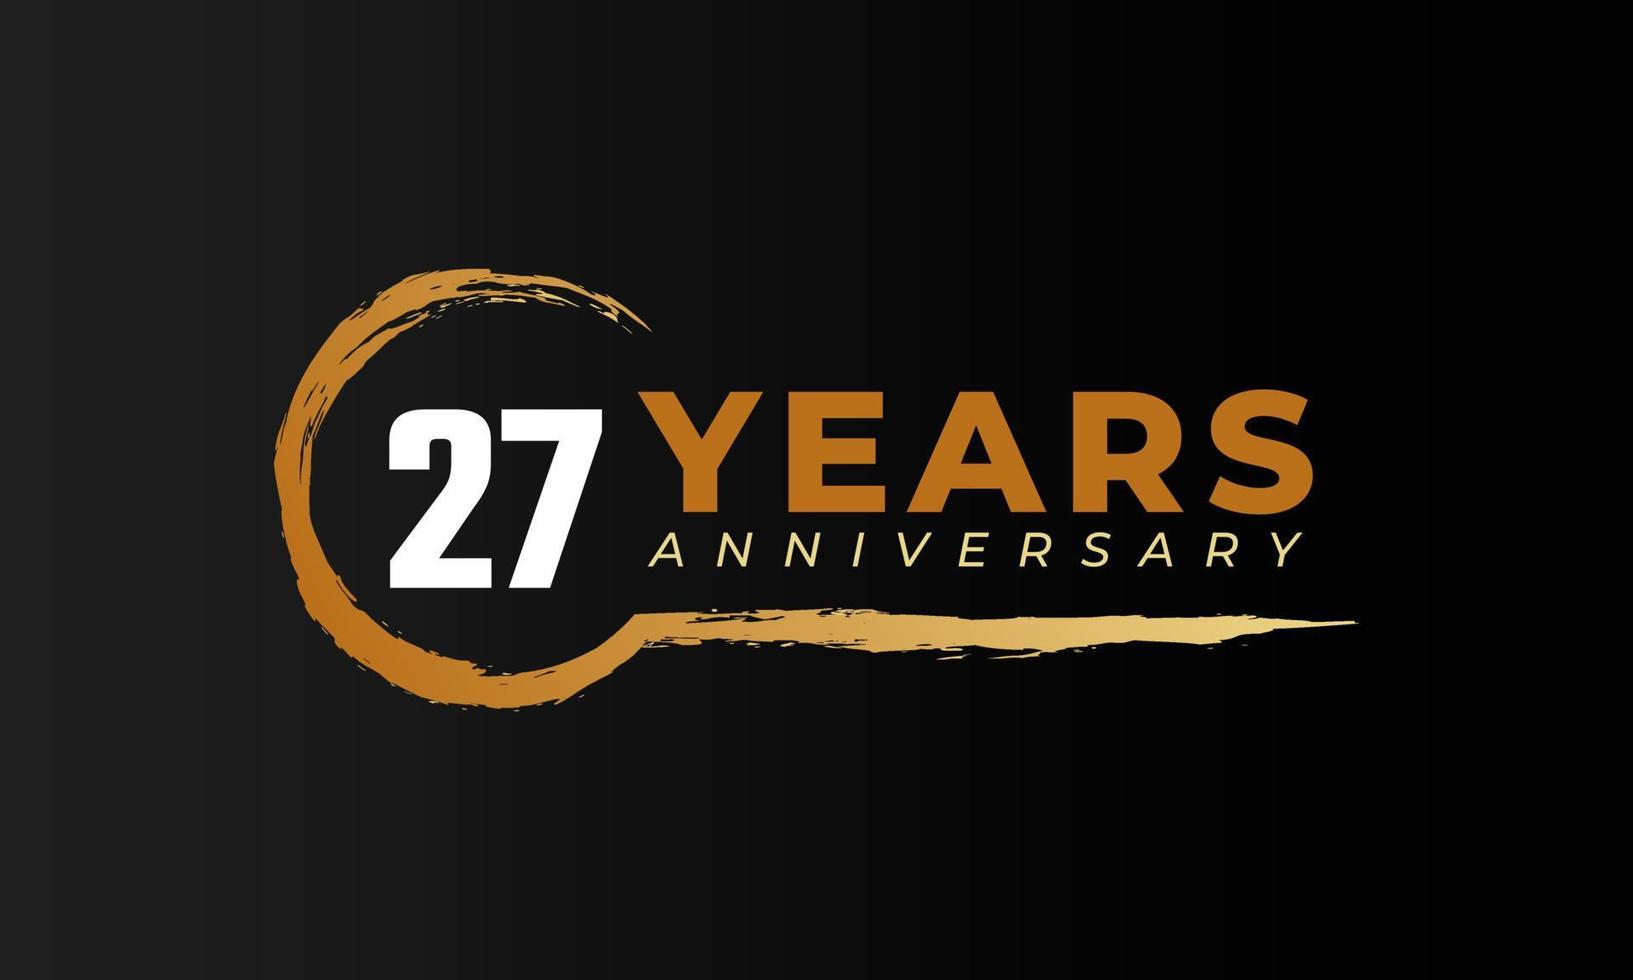 27-jarig jubileumfeest met cirkelborstel in gouden kleur. gelukkige verjaardag groet viert gebeurtenis geïsoleerd op zwarte achtergrond vector